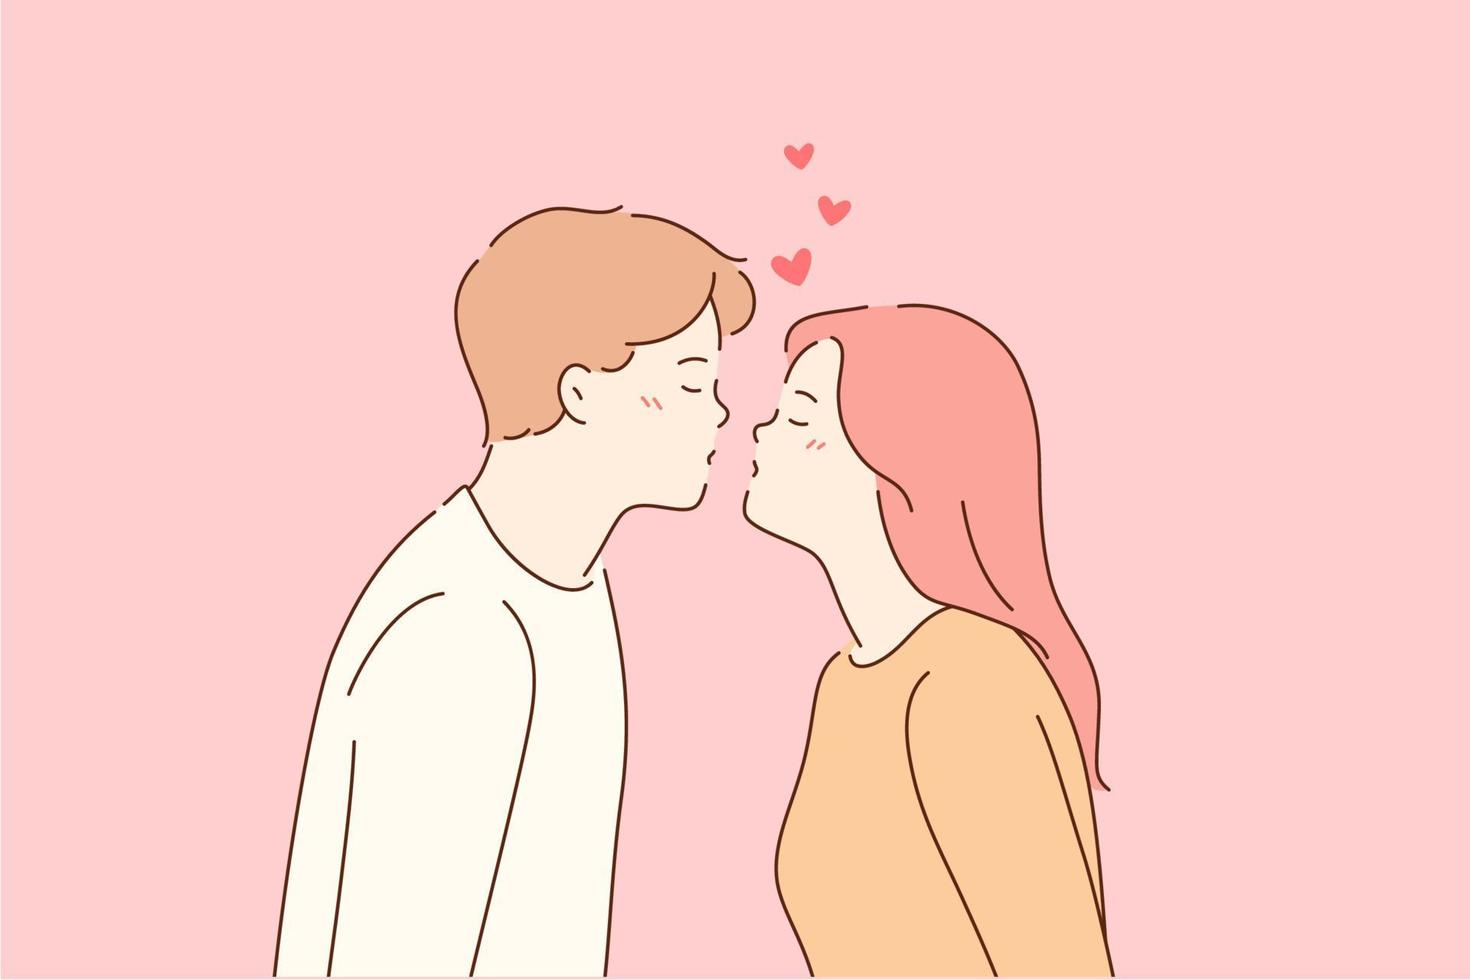 kus, liefde, romantisch dating concept. profiel portret van jong gelukkig liefhebbend paar jongen en meisje bereiken voor elk andere in kus met ogen Gesloten over- roze achtergrond vector illustratie